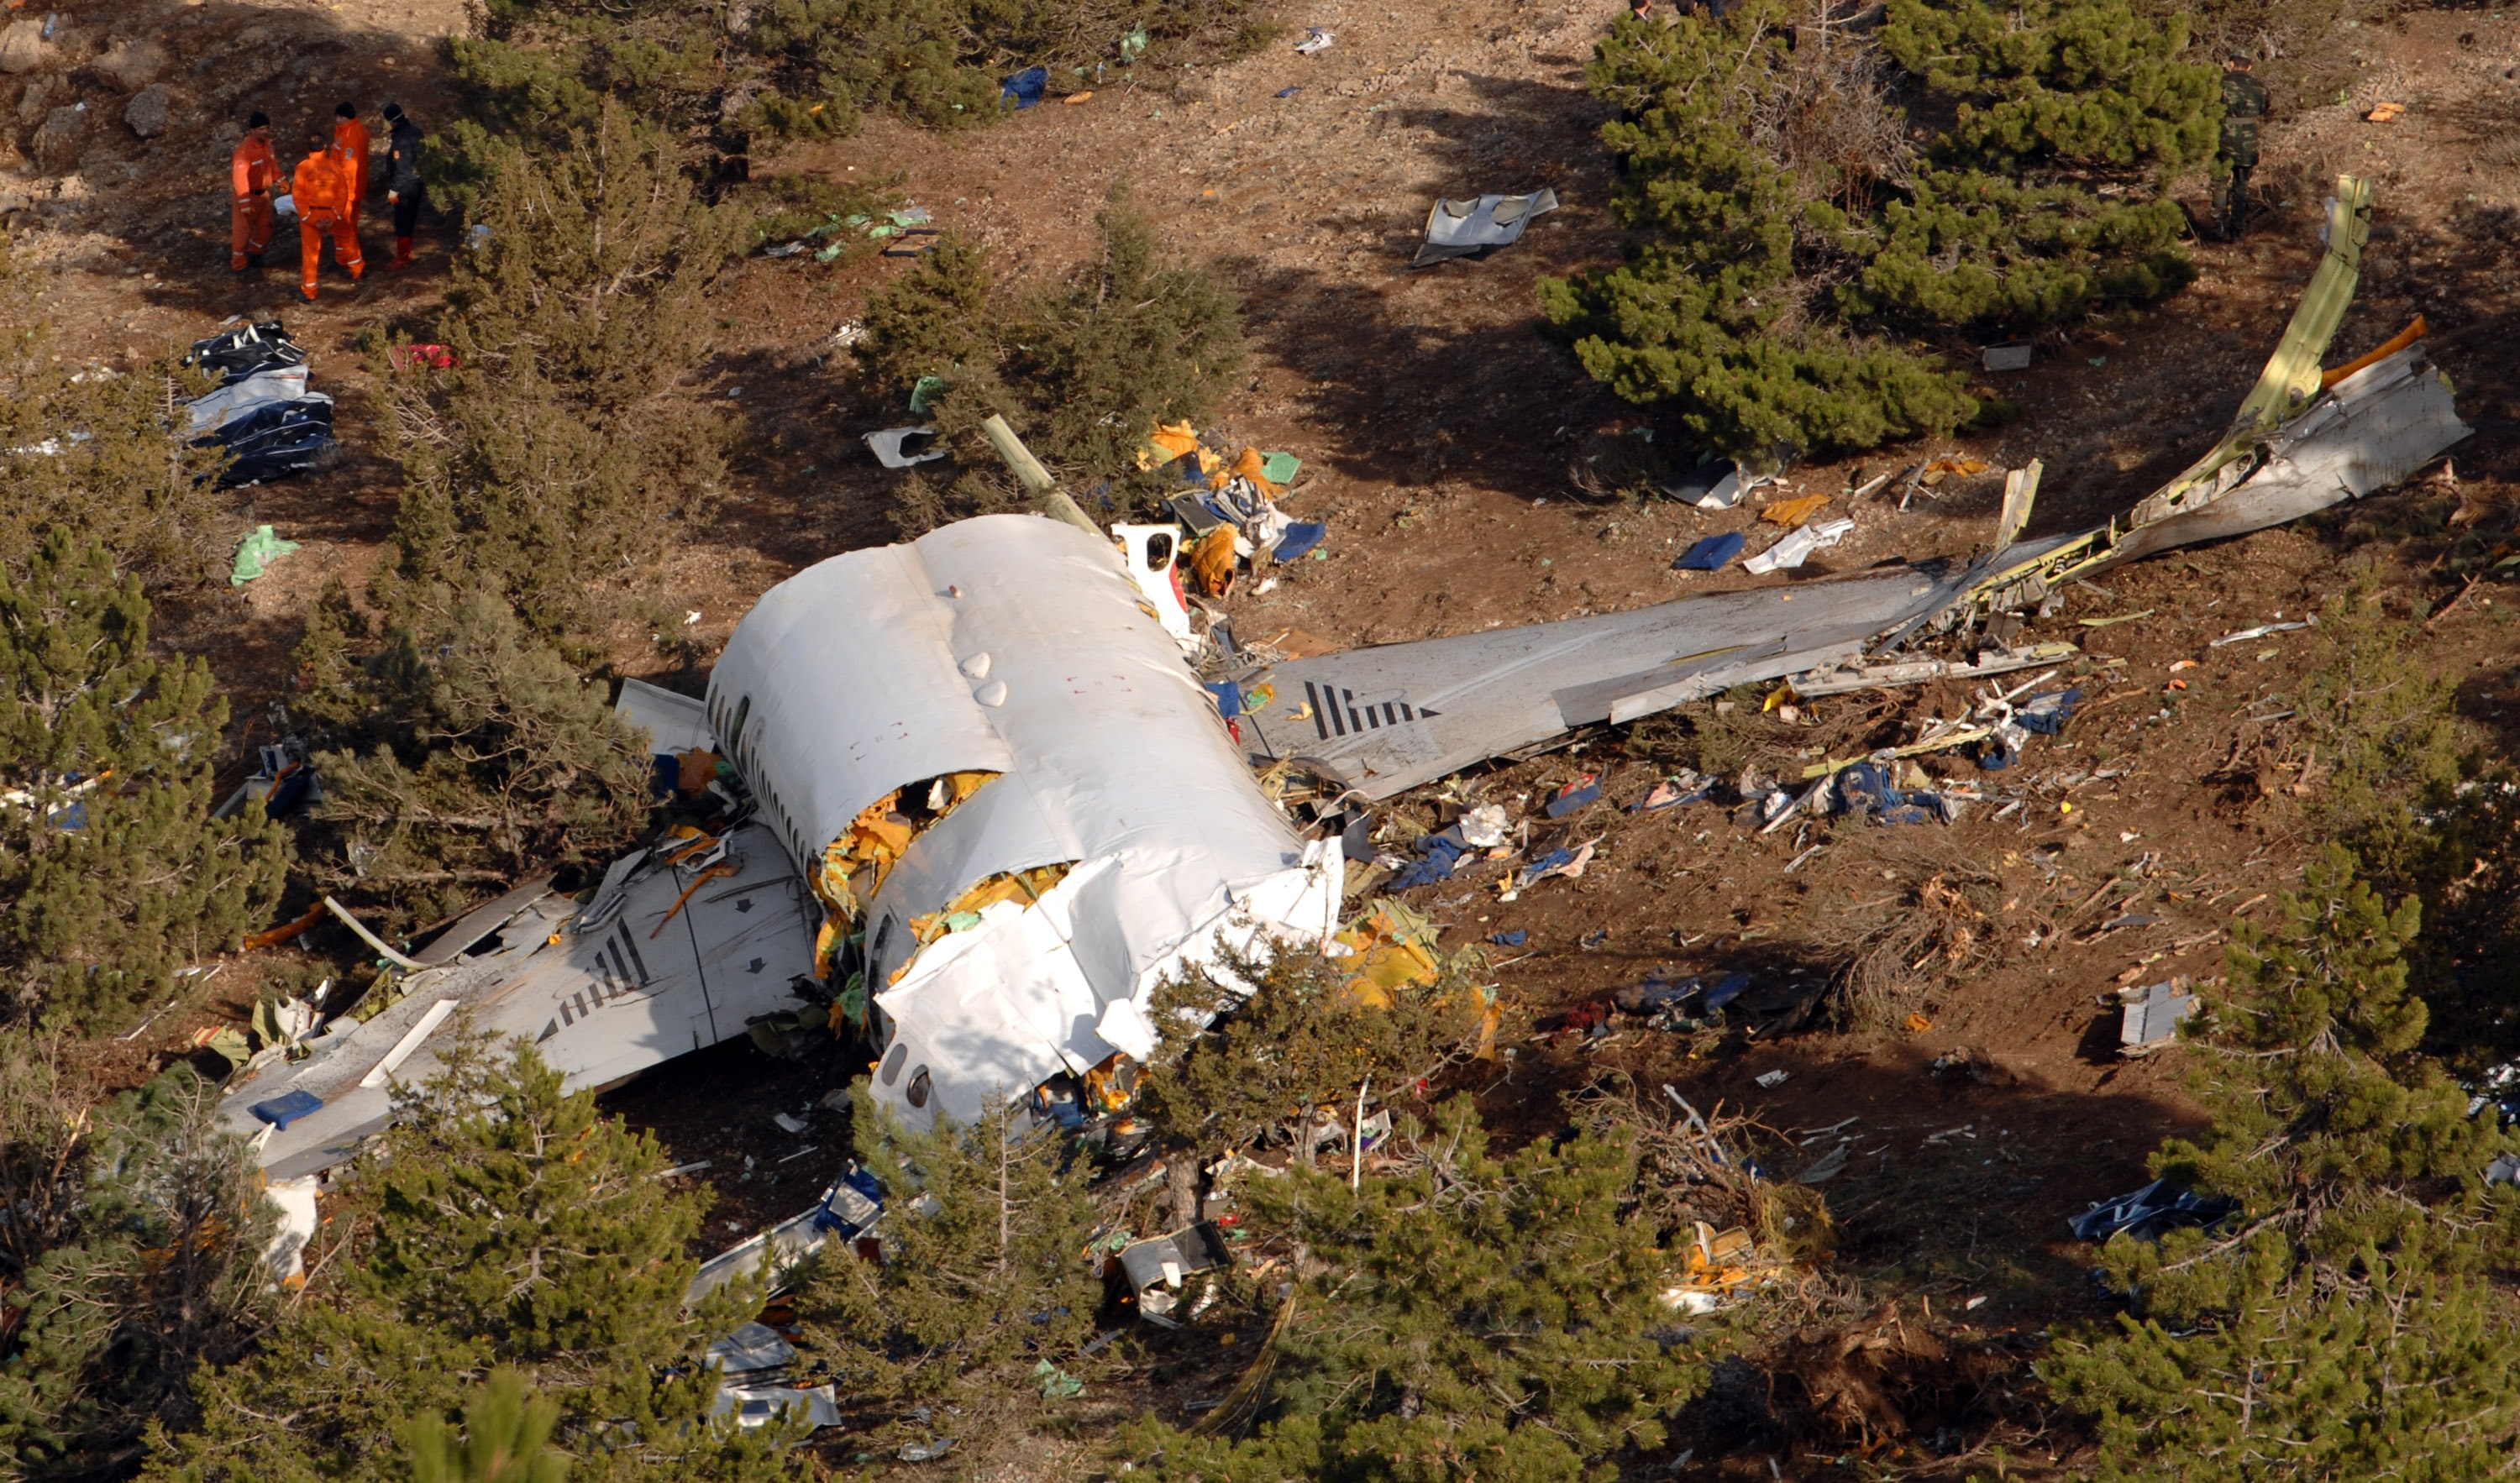 57 kişinin öldüğü Isparta uçak kazası dosyası yıllar sonra kapandı